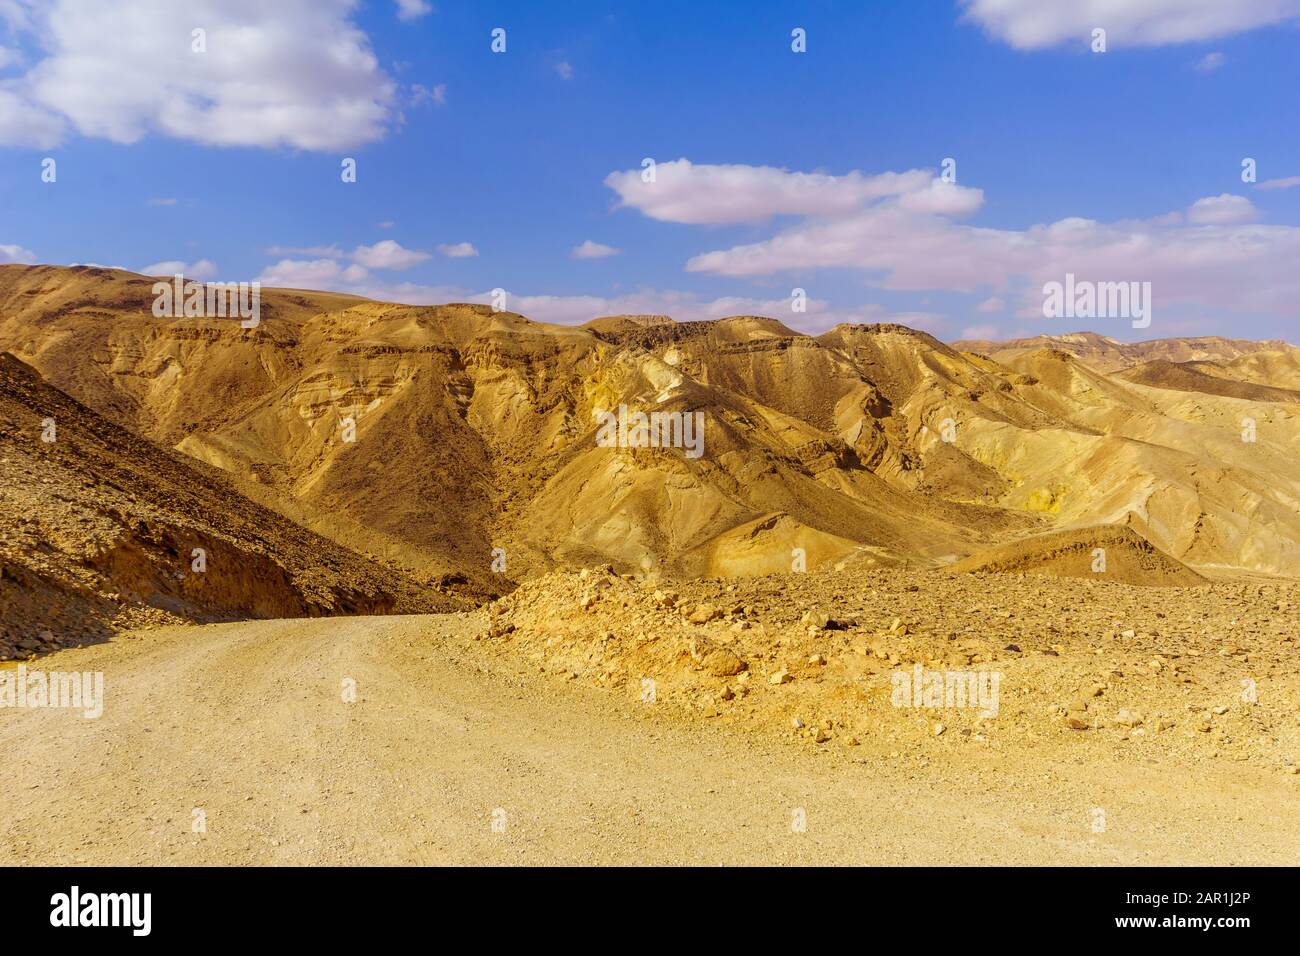 Vista di Nahal Amram (valle del deserto) e del paesaggio desertico di Arava, Israele meridionale Foto Stock